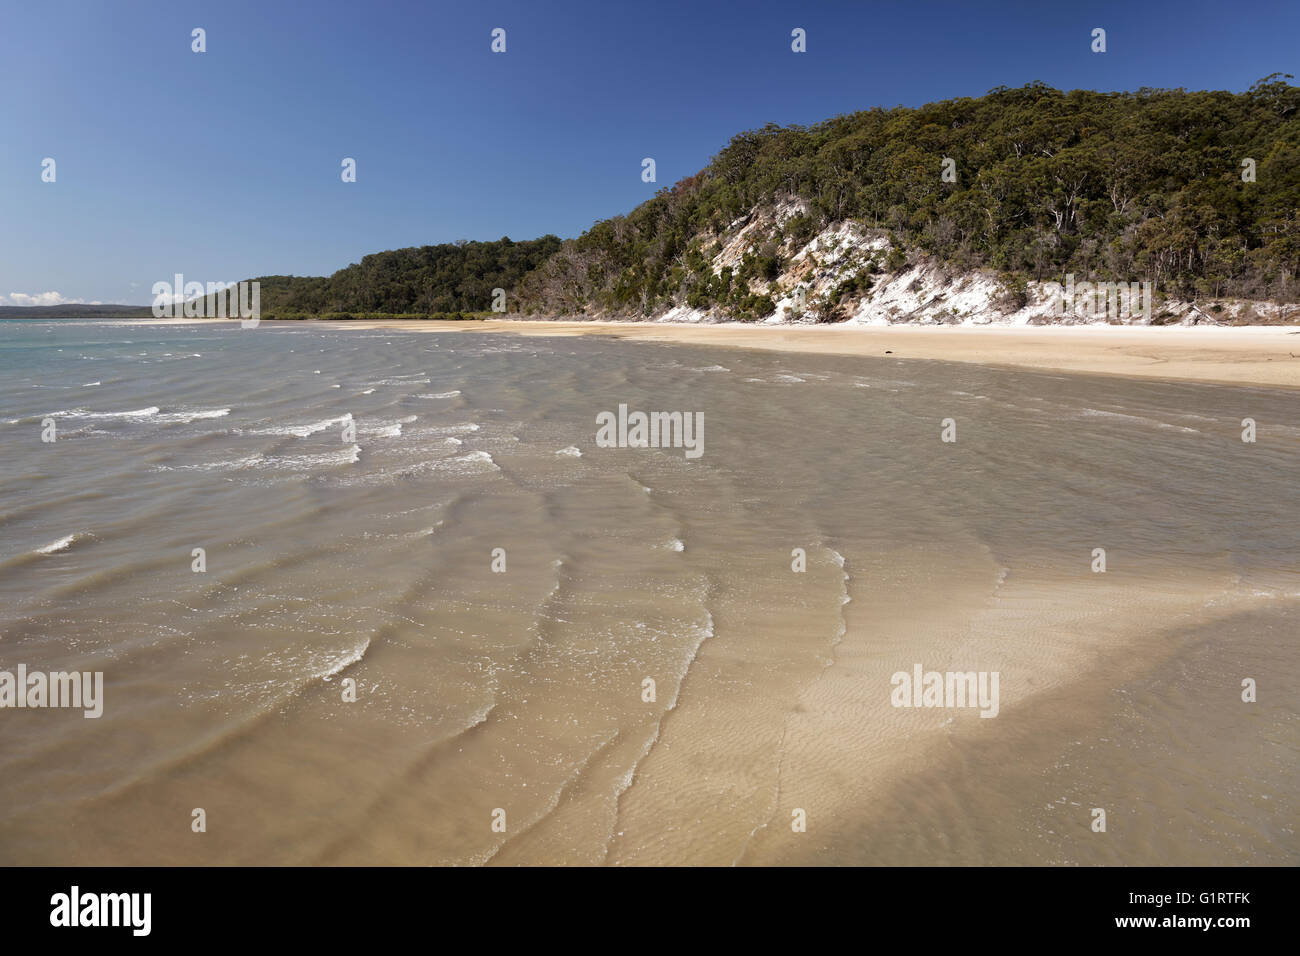 Bucht mit Strand und Klippen, UNESCO-Weltkulturerbe, Fraser Island, große sandige Strand-Nationalpark, Queensland, Australien Stockfoto